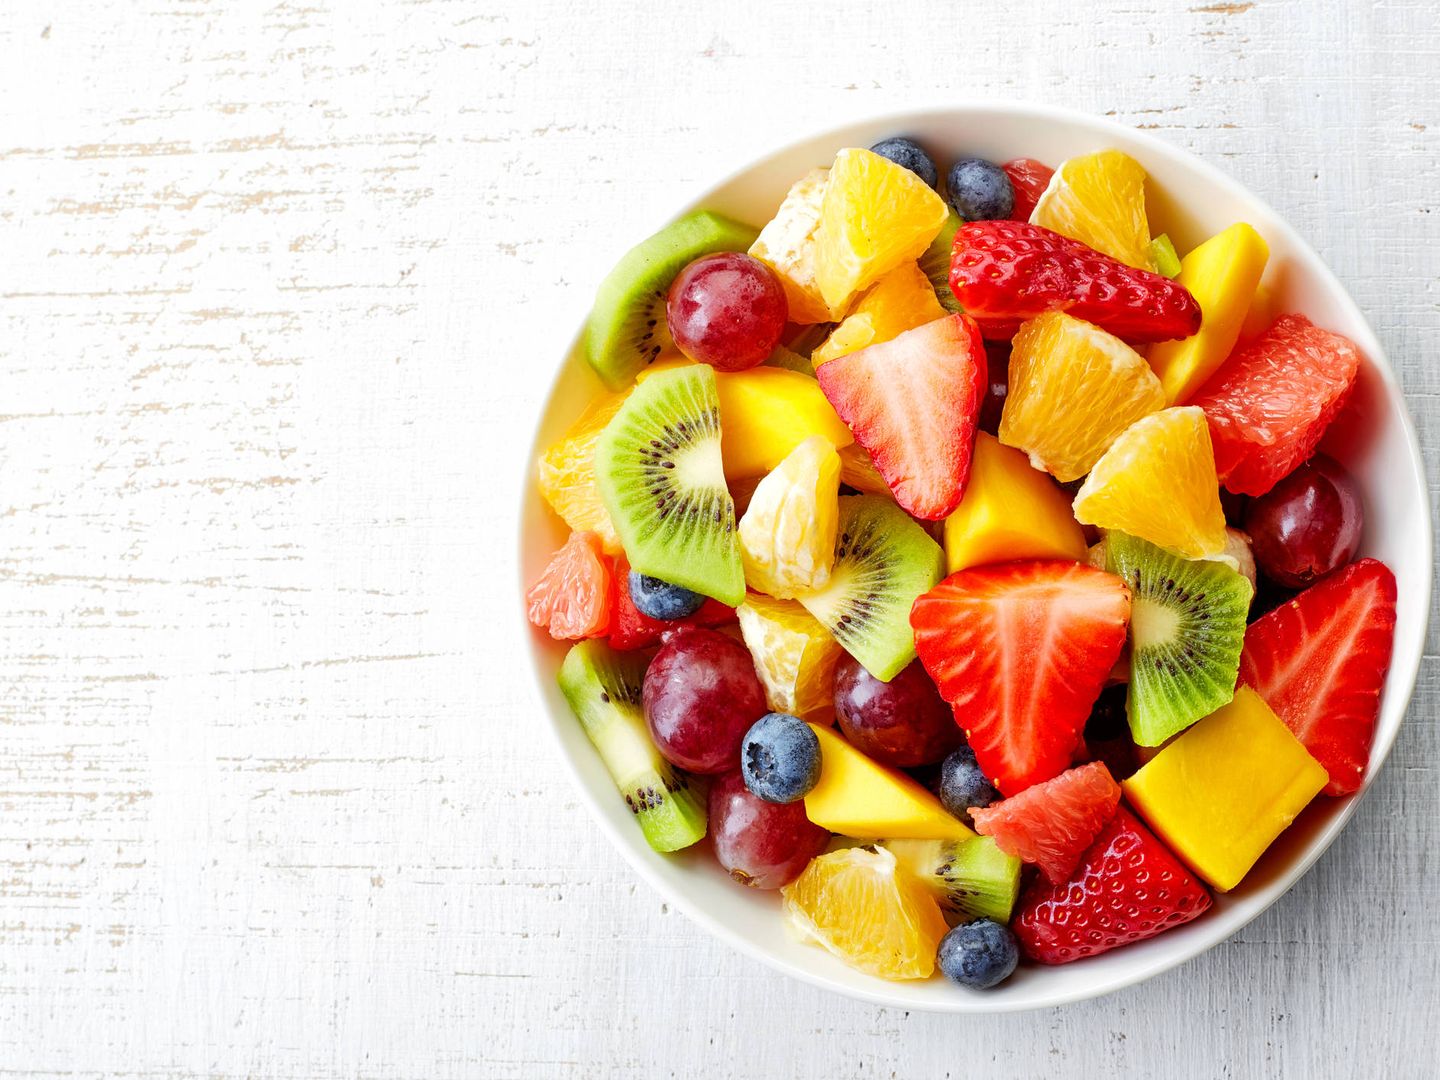 Las frutas producen saciedad y tienen escaso aporte calórico.